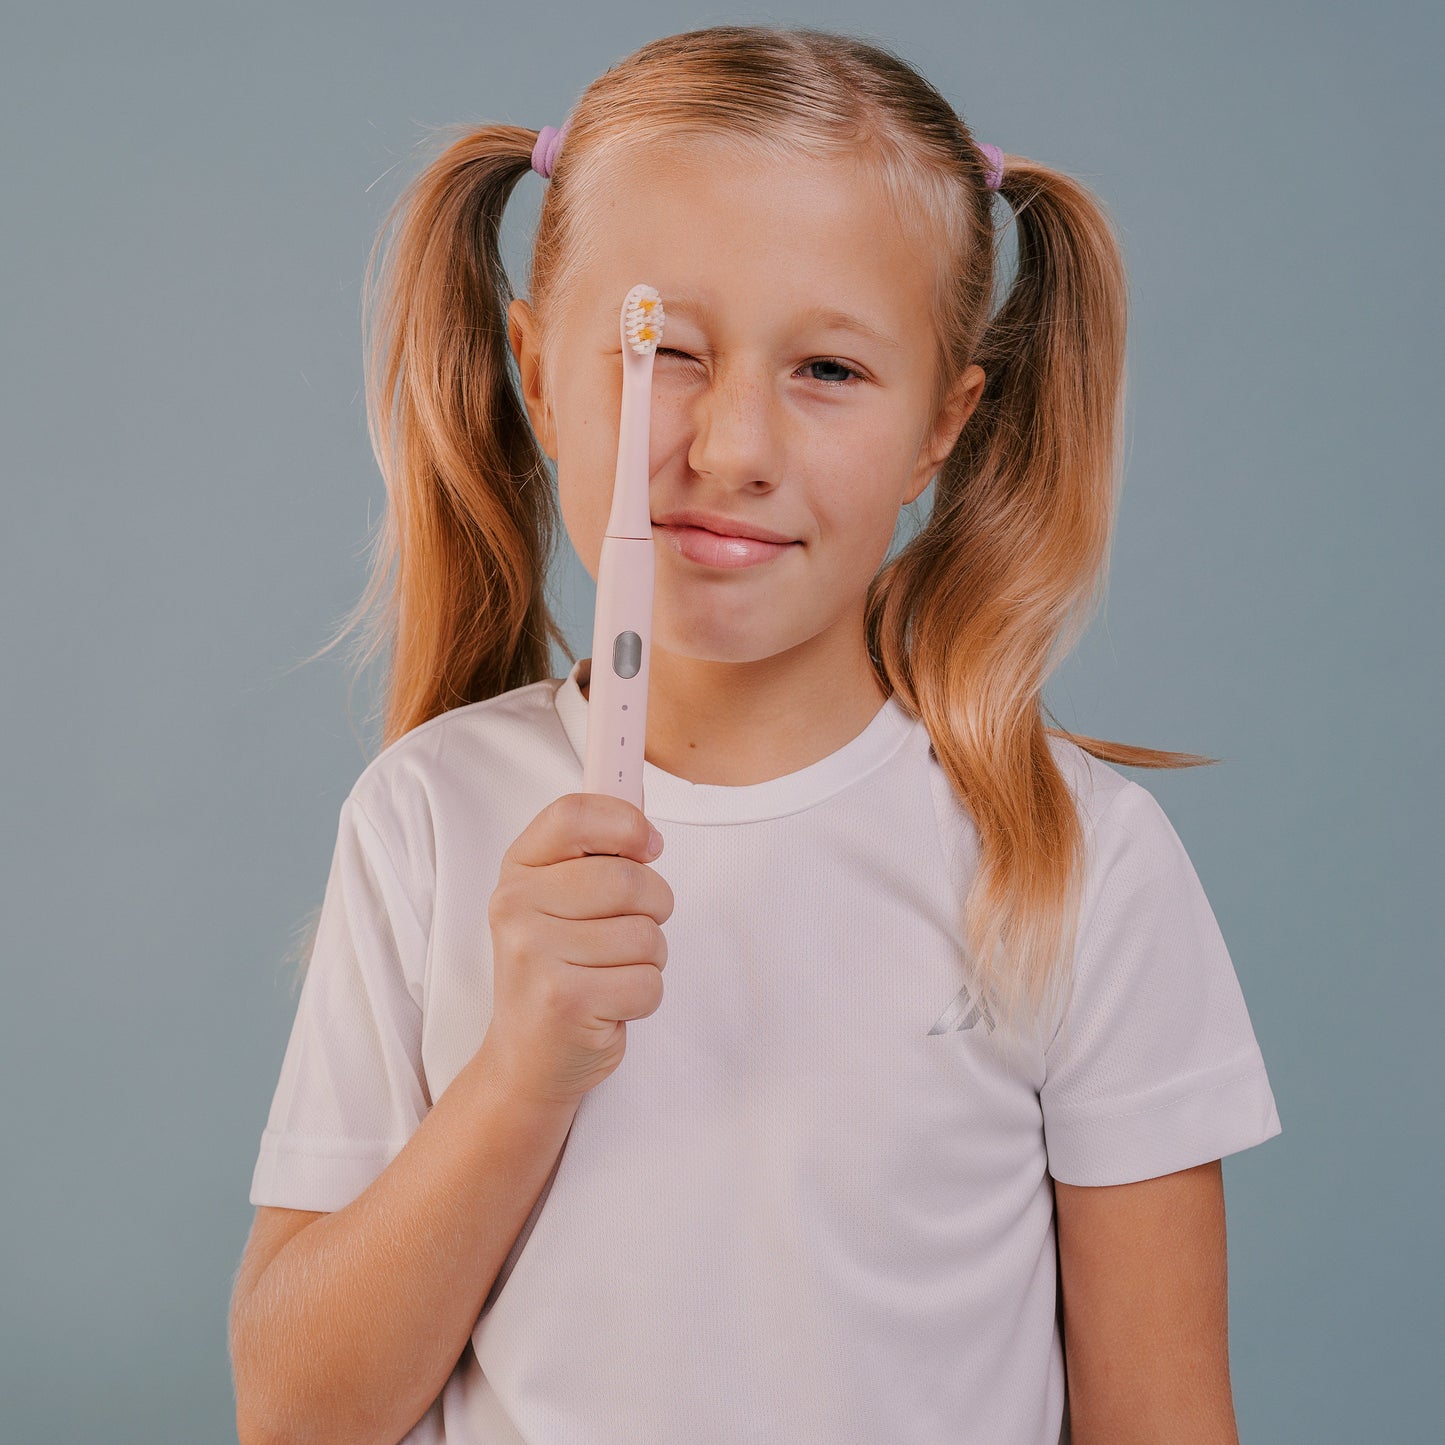 НАБОР детская электрическая зубная щетка Smiley Light розовая купити дитячу електричну зубну щітку купить детскую электрическую зубную щетку купить электрощетку детскую електрична зубна щітка дитяча электрощетка зубная детская